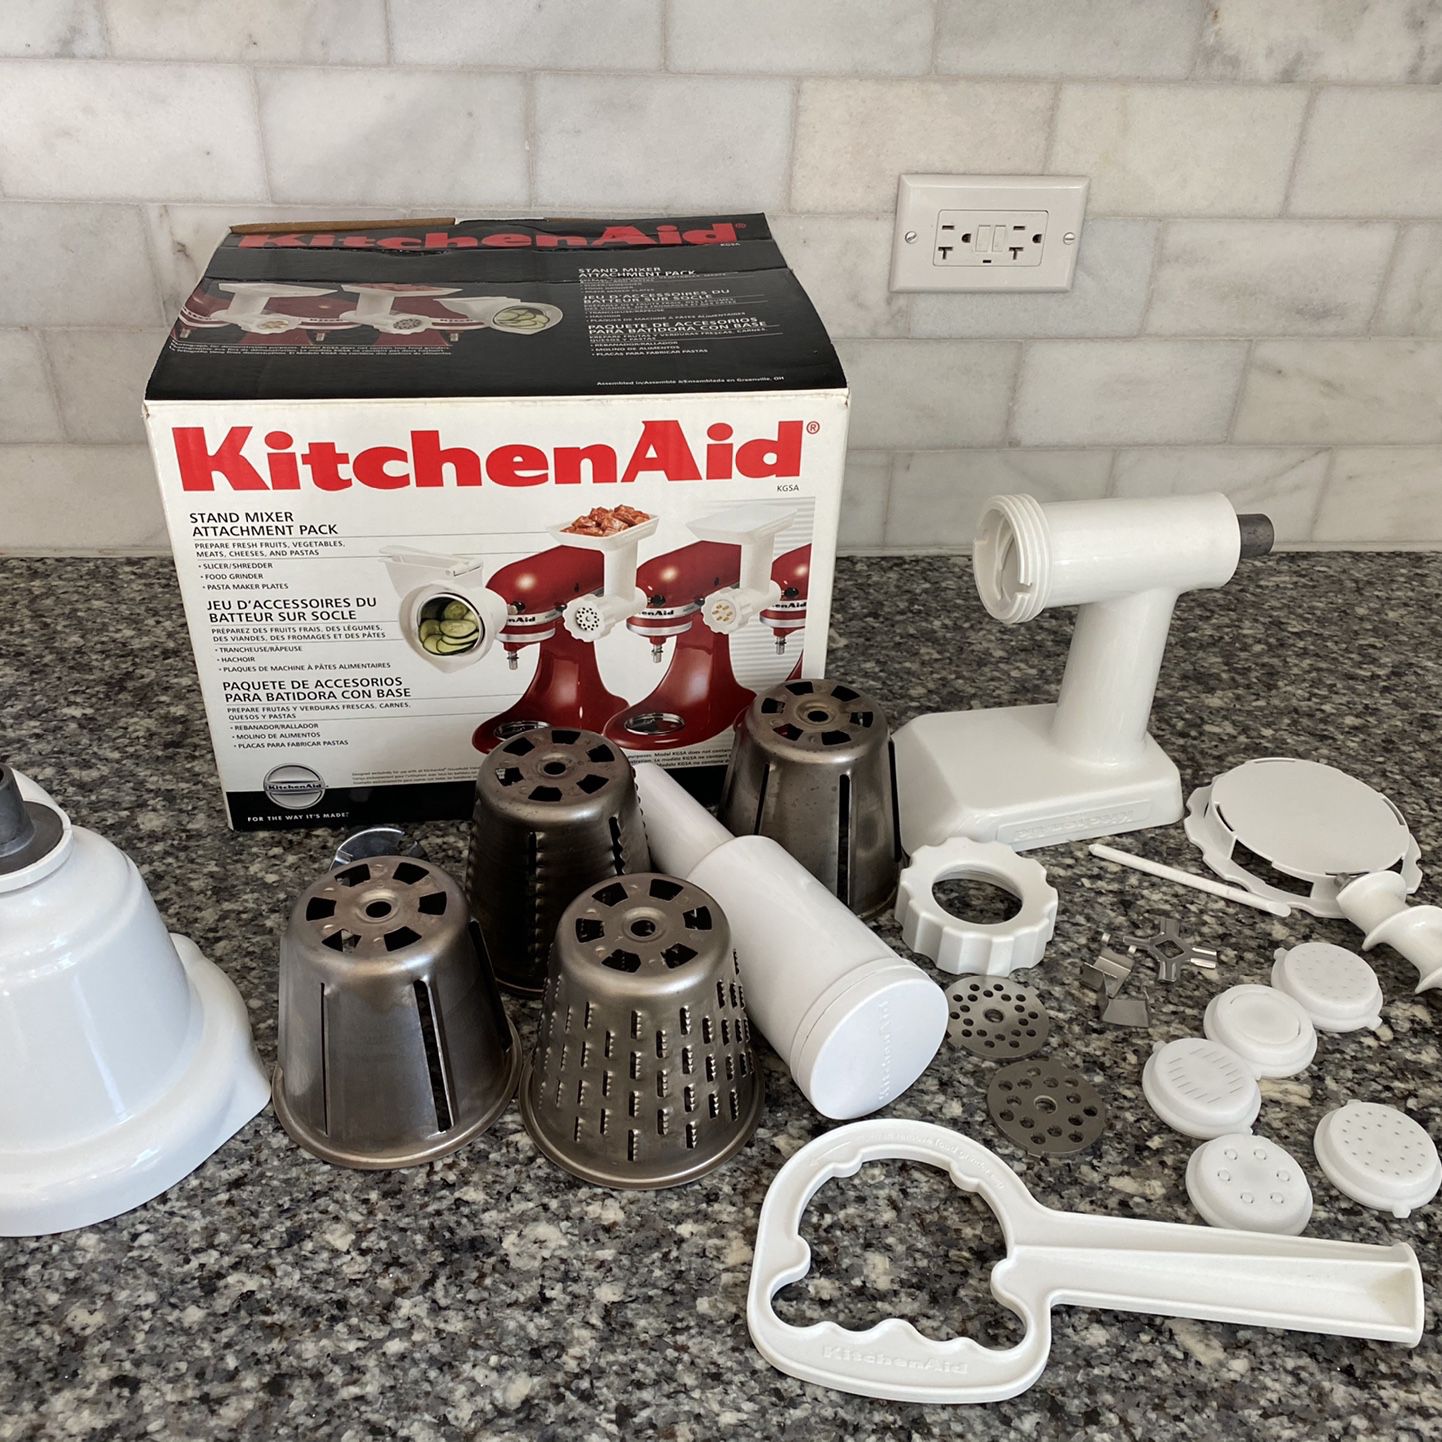 KitchenAid Attachment Pack KGSA- Slicer, Grinder, Pasta Maker for